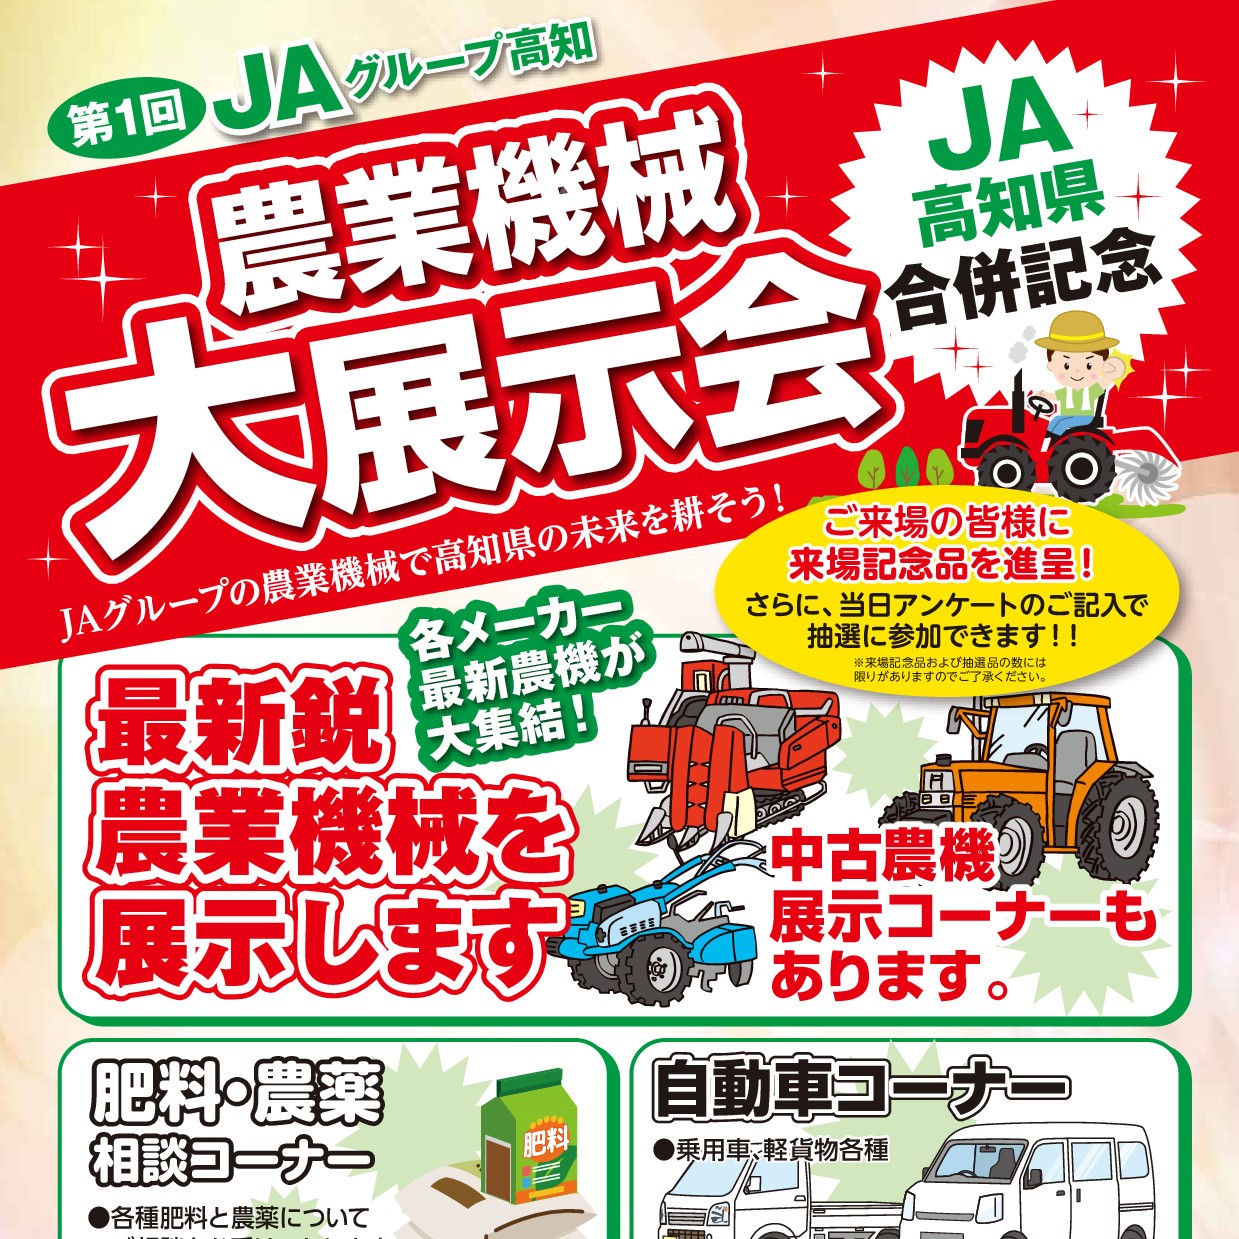 7月5日 6日 第1回農業機械大展示会を行います 公式 Ja高知県